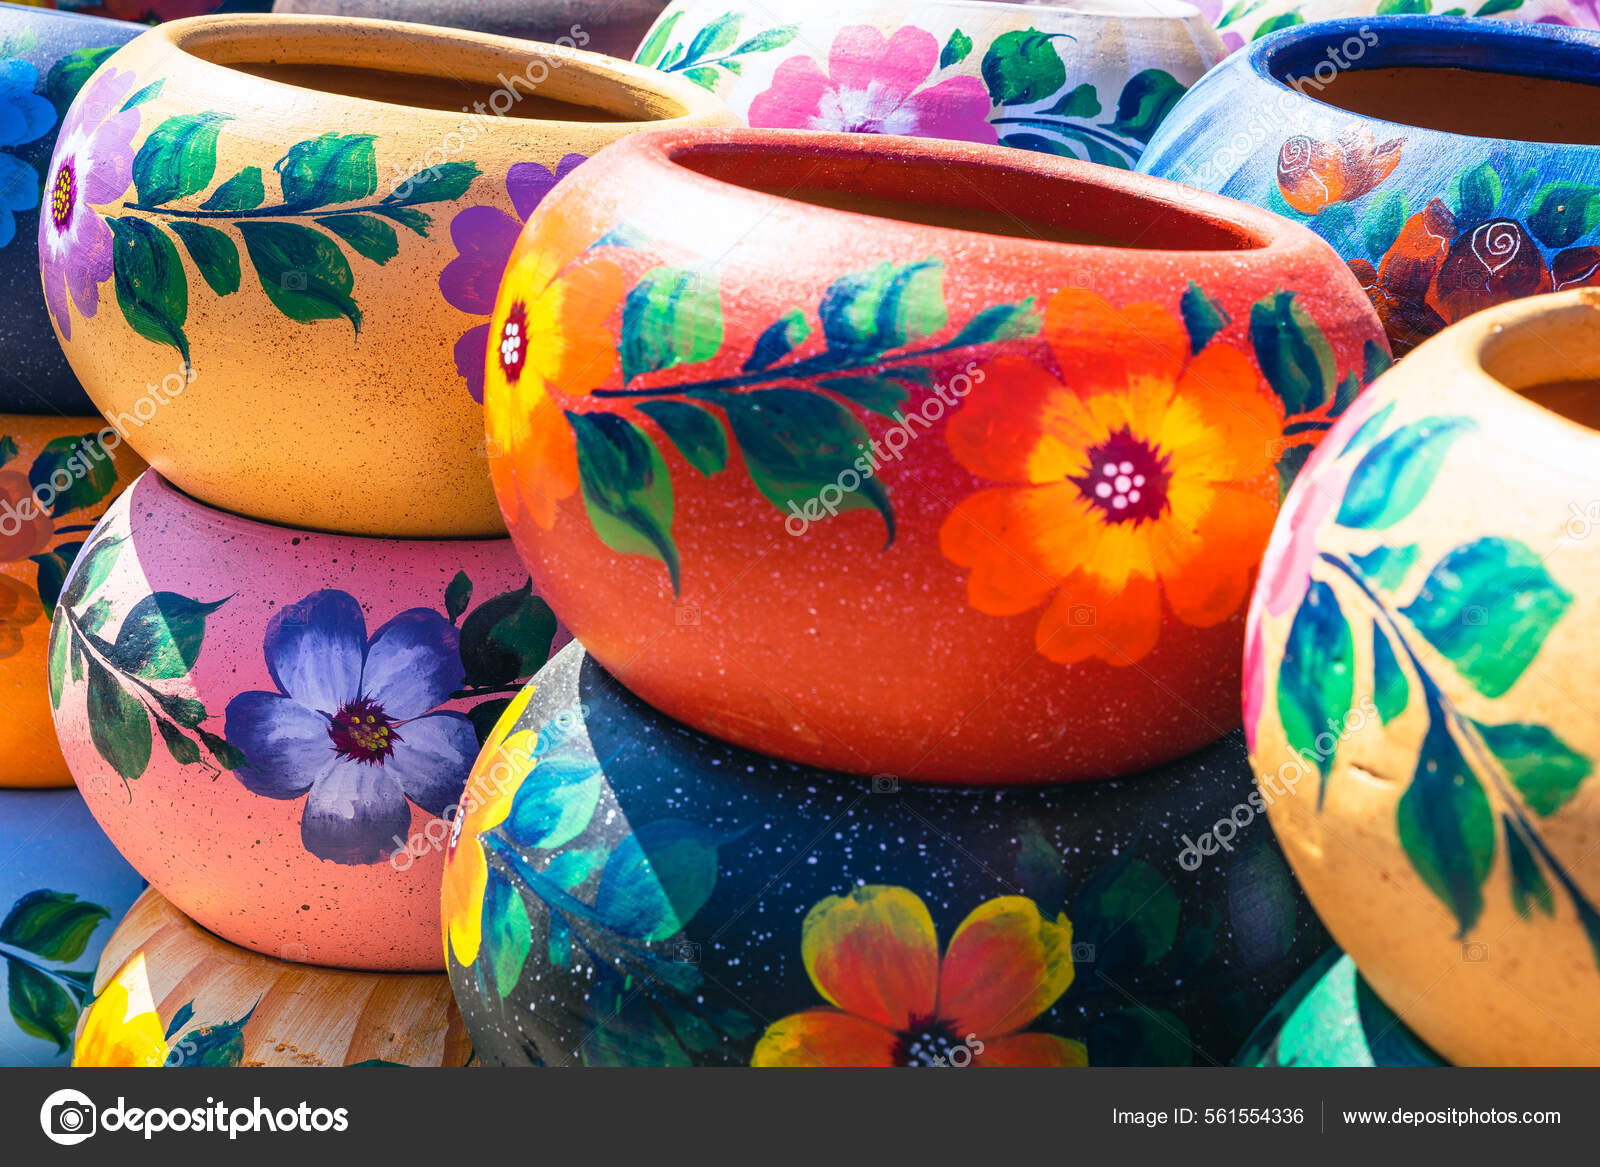 Comprar jarrón de cerámica con decorado floral multicolor